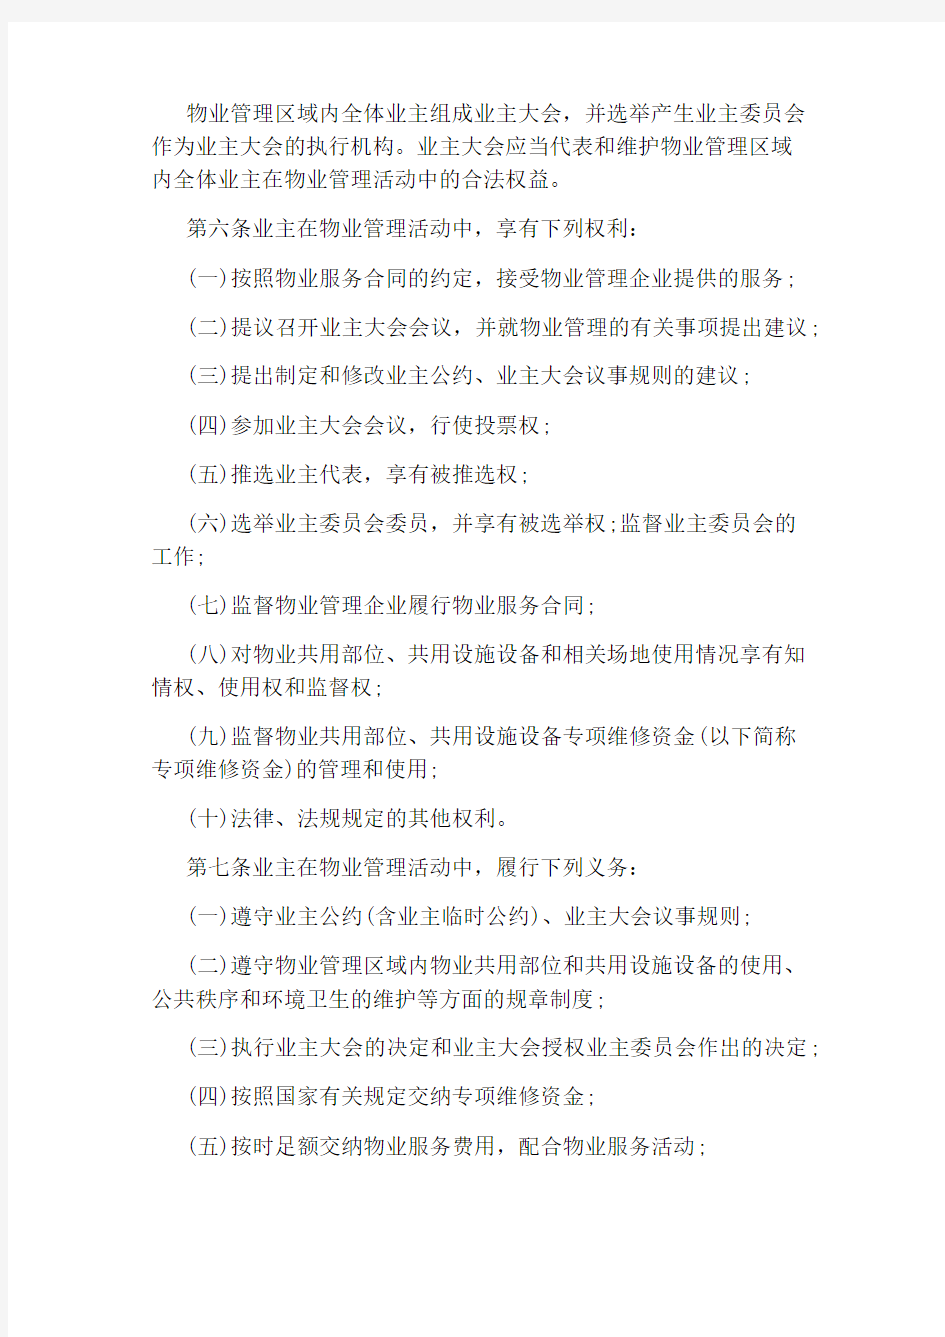 安庆市物业管理办法「全文」